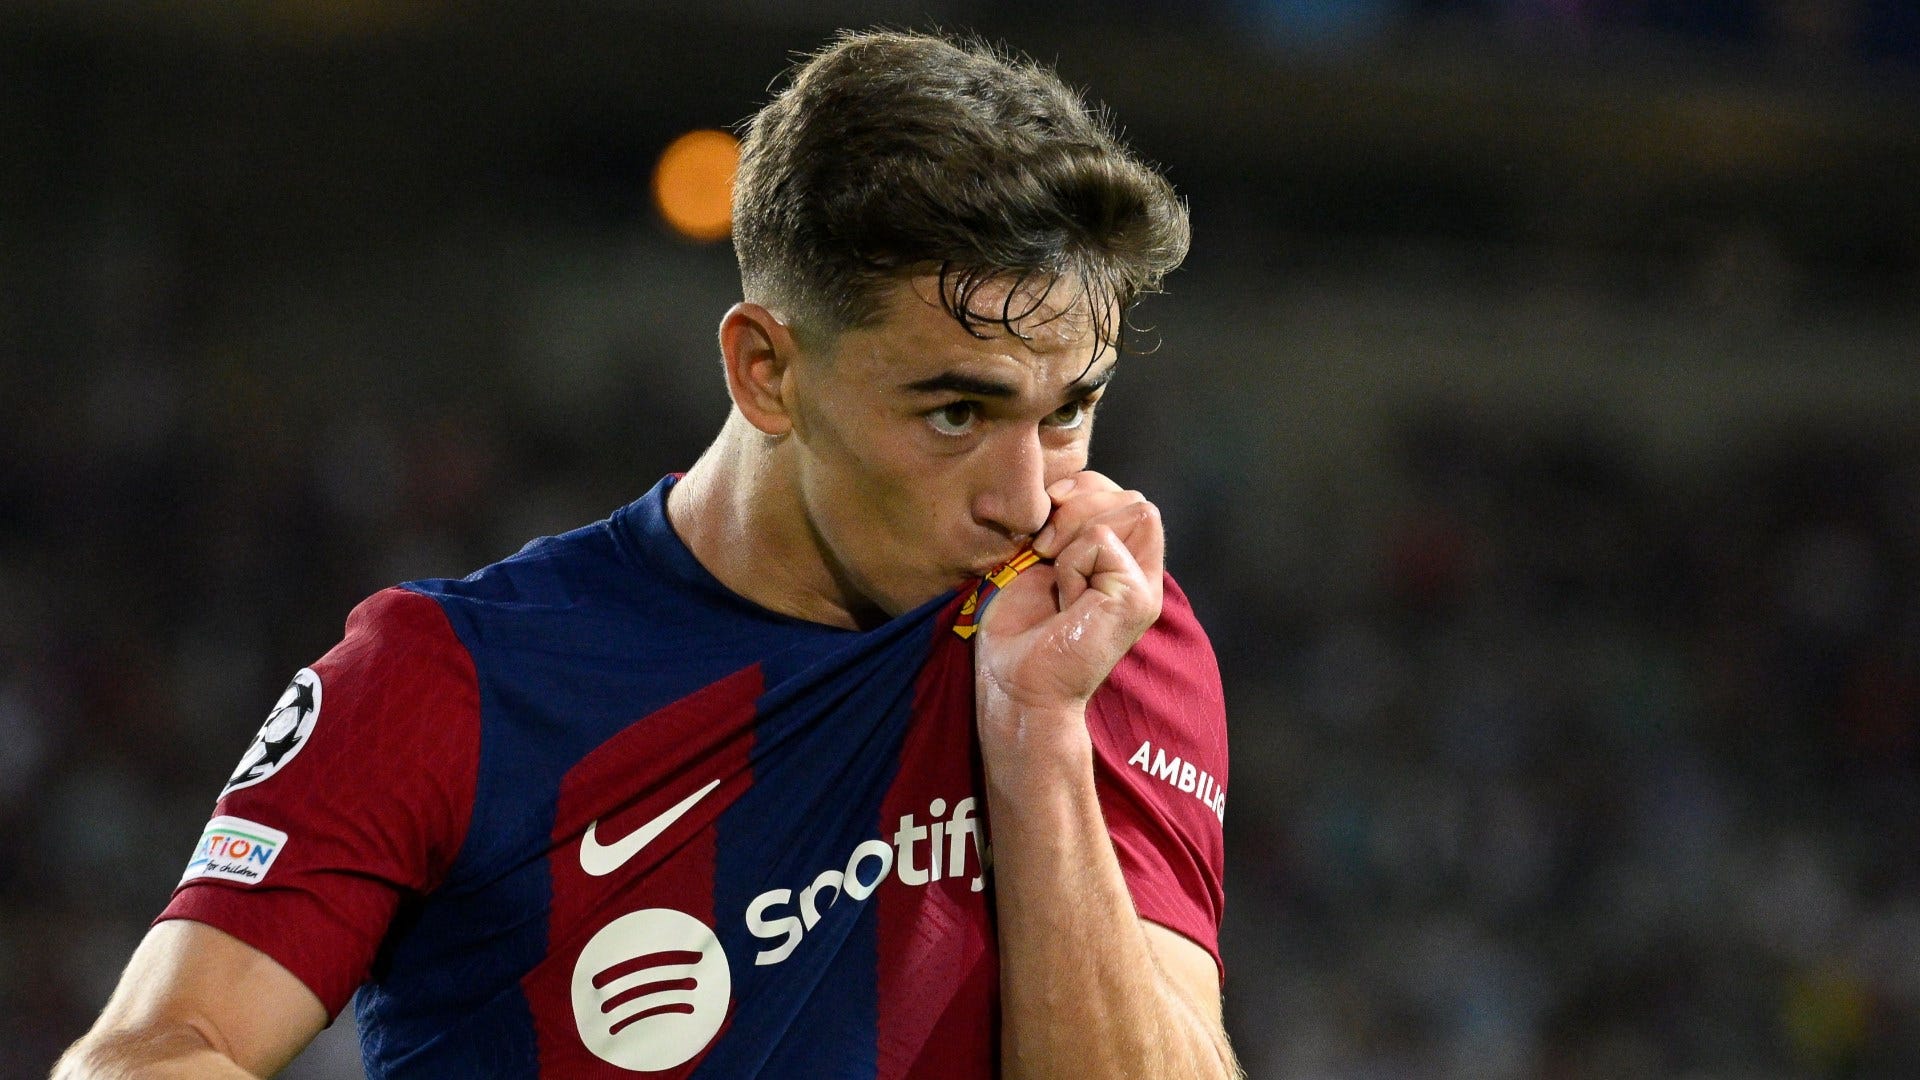 "Robert, verdammt. Da braucht es kein Foul!": Barcelona-Youngster Gavi mit eindeutiger Ansage an Lewandowski